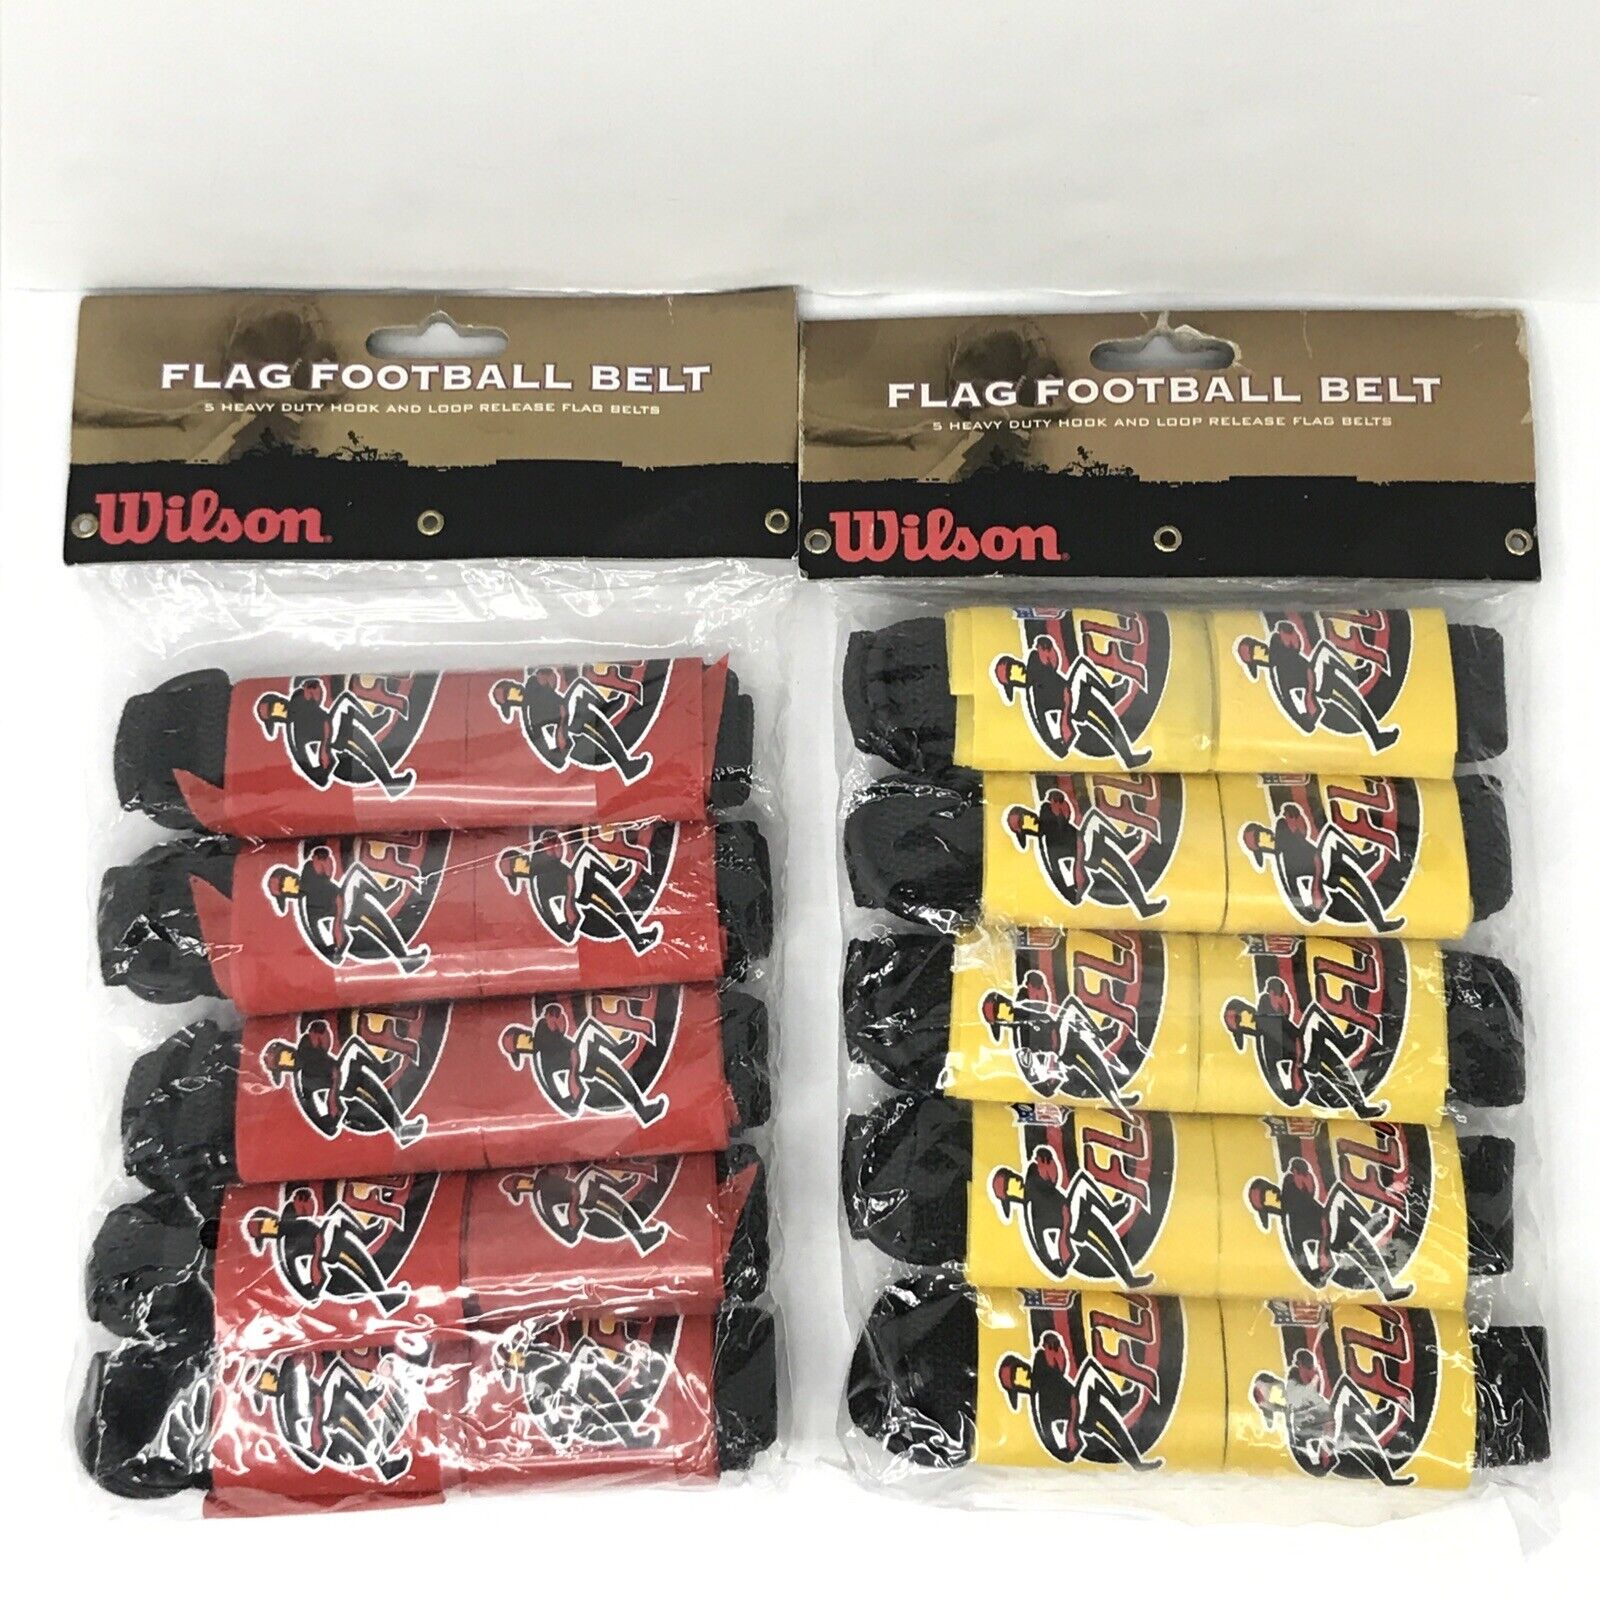 Wilson NFL Flag Football Belt 5 Pack Package for sale online eBay